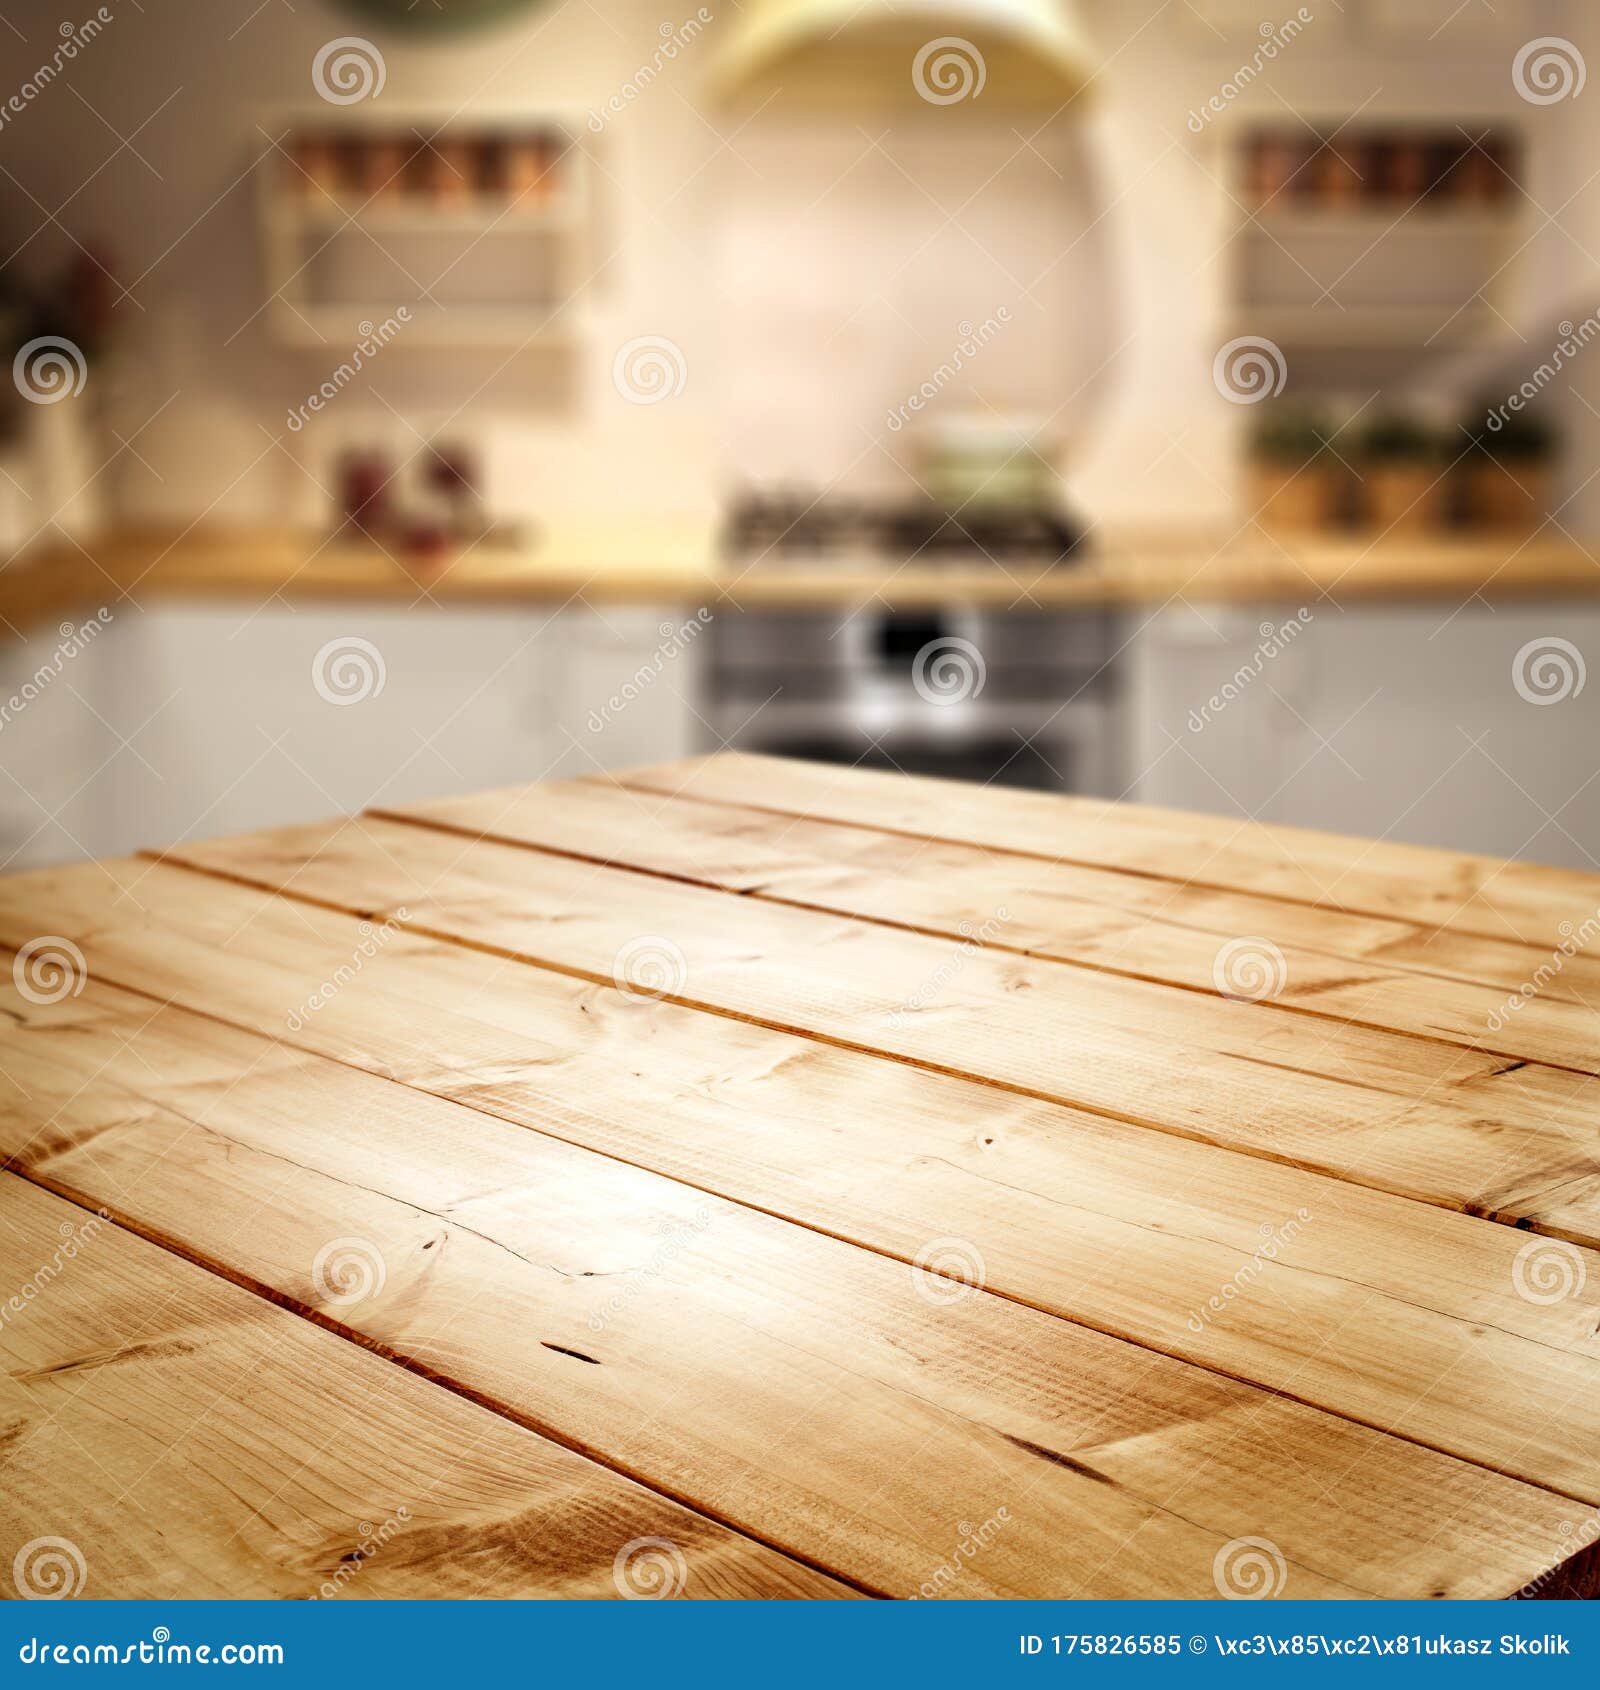 Với bàn gỗ trống trên nền nhòe của nhà bếp, bạn có thể tự do sáng tạo và thiết kế không gian bếp của riêng mình. Hình ảnh chụp từ khoảng cách xa cho thấy sự thanh lịch và tinh tế của thiết kế. Nhấn vào hình ảnh để thấy sự hoàn hảo của không gian bếp.